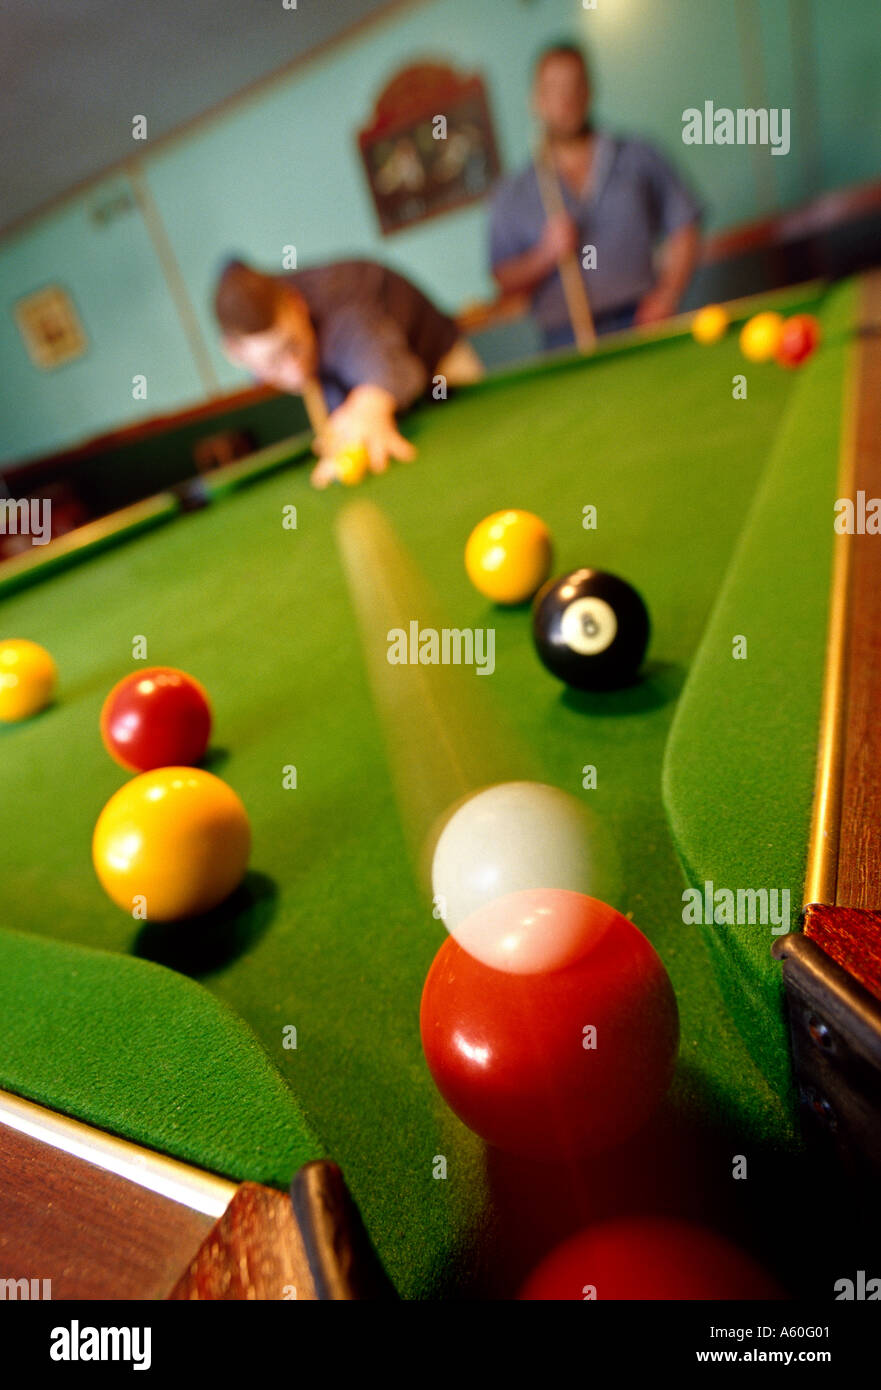 Los hombres jugando pool Foto de stock